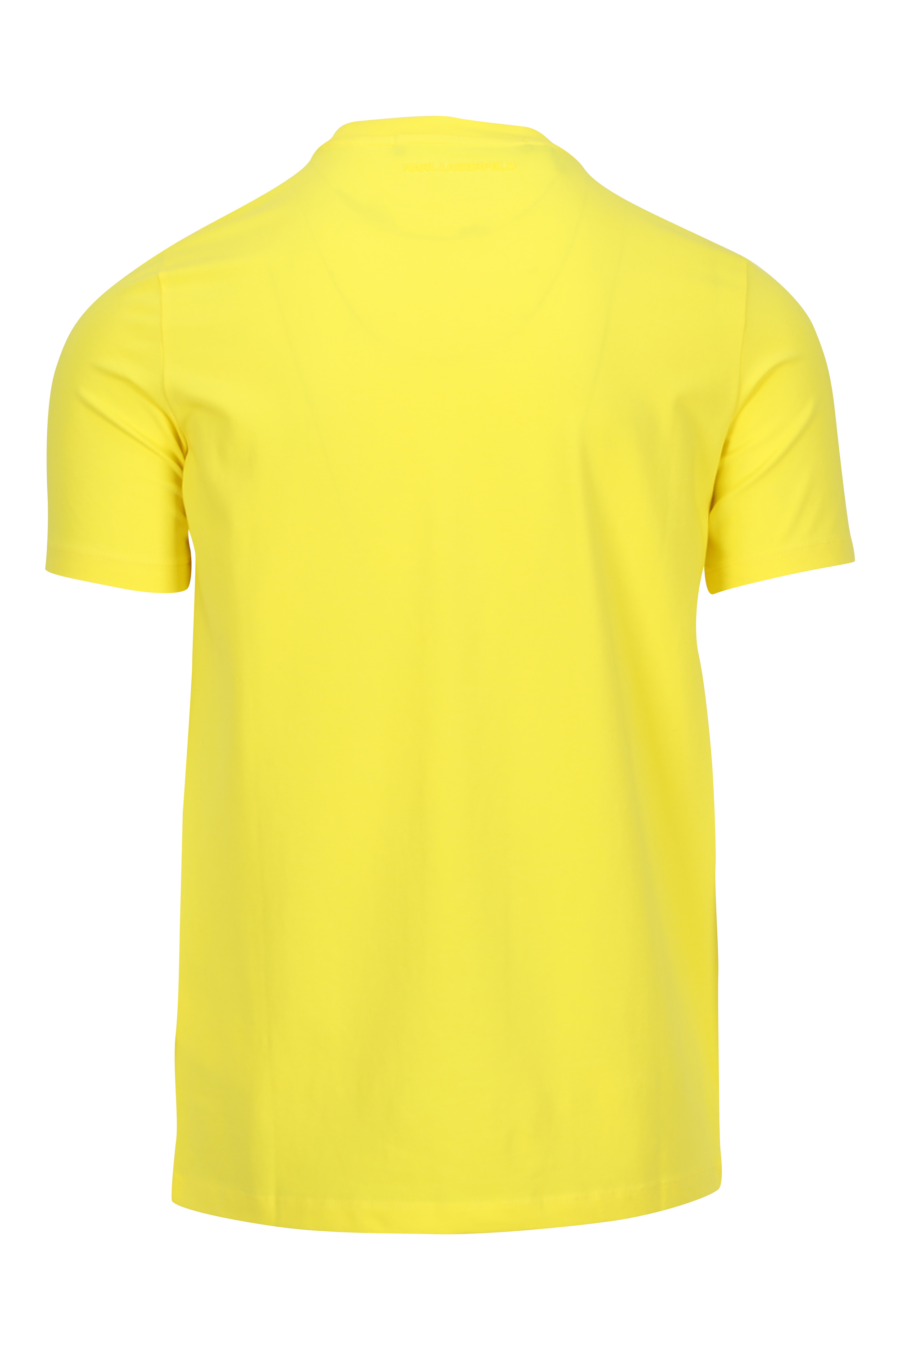 Camiseta amarilla con minilogo "karl" en goma - 4062226954433 1